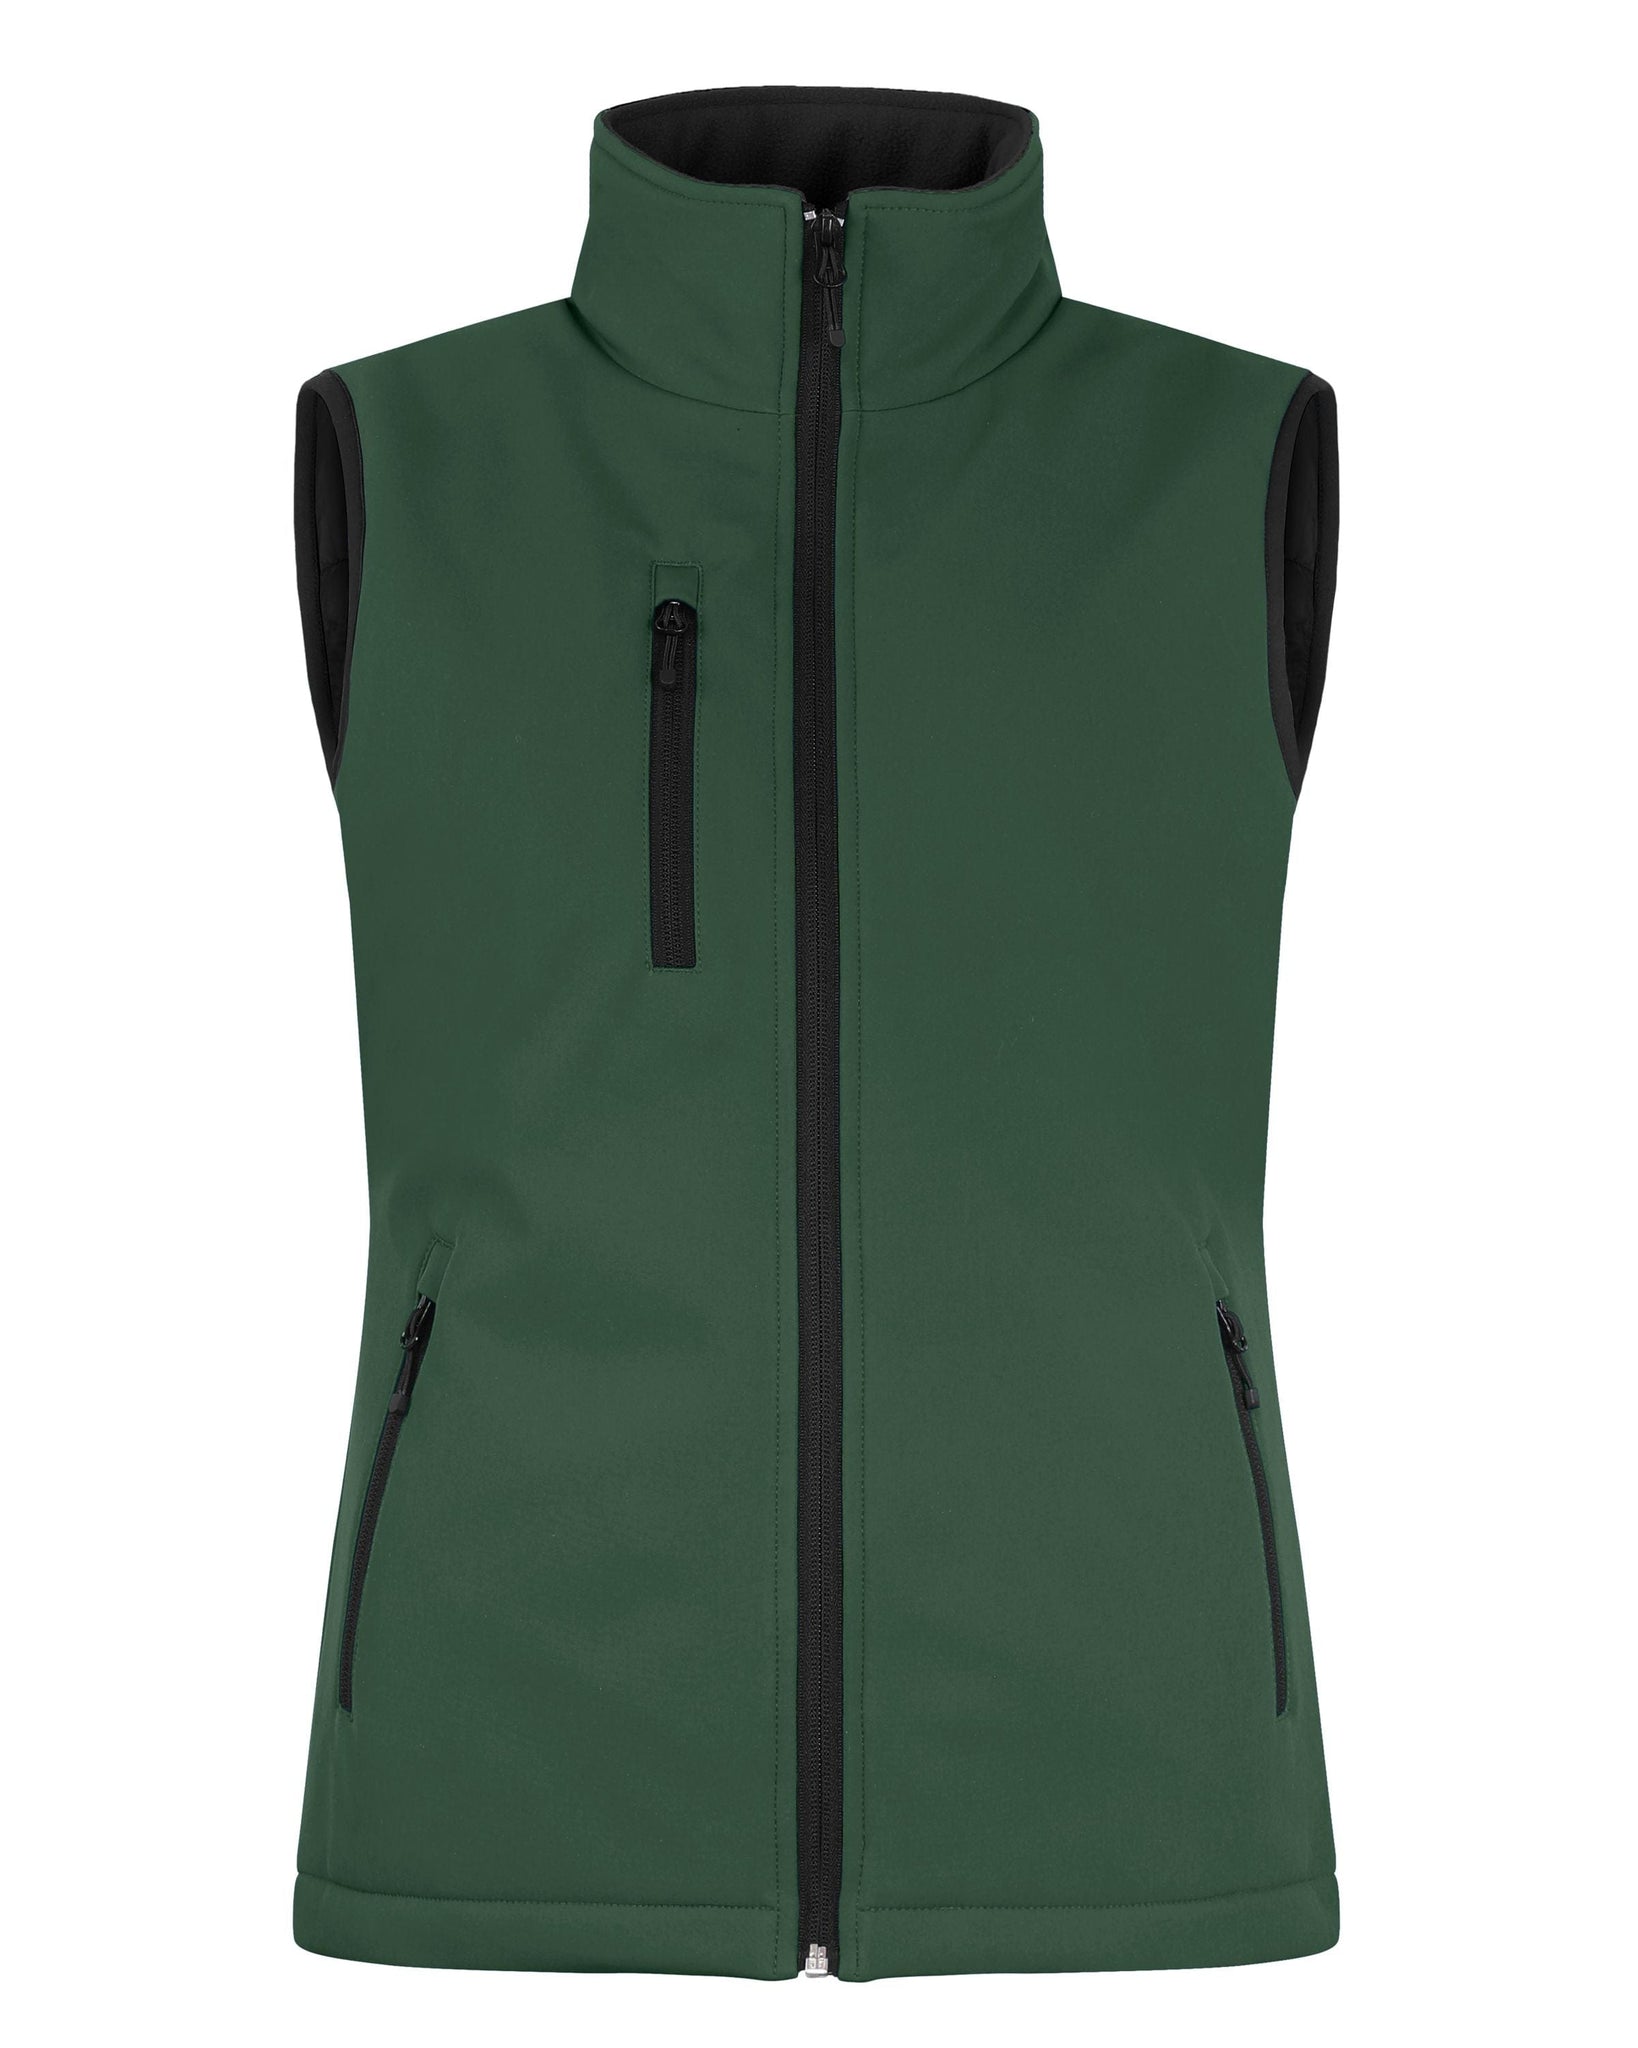 Cutter & Buck Outerwear XS / Bottle Green Cutter & Buck - Clique Women's Equinox Insulated Softshell Vest